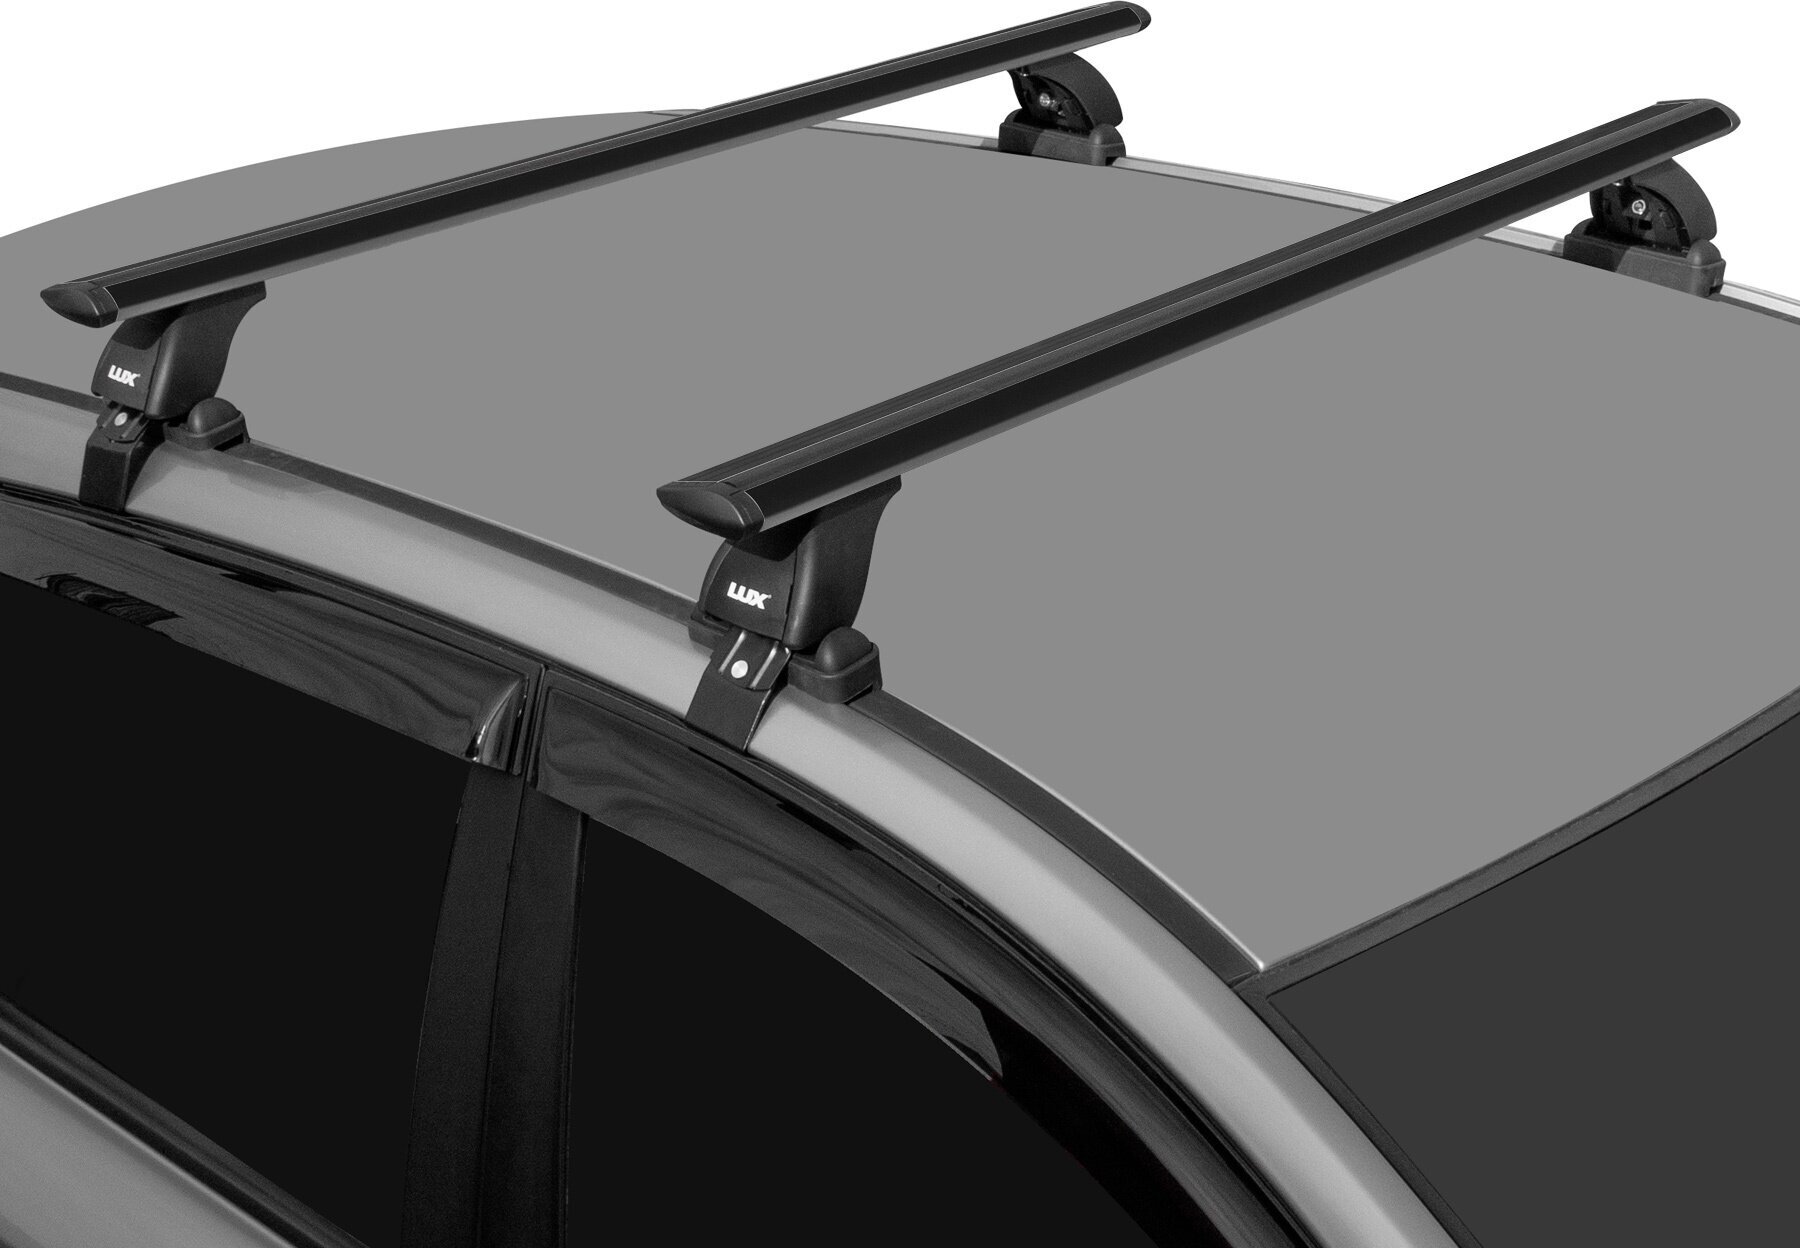 Багажник на крышу LUX черные дуги аэро-тревел (82мм) 11м на Киа Рио 2 седан 2005-2011 арт:214549B